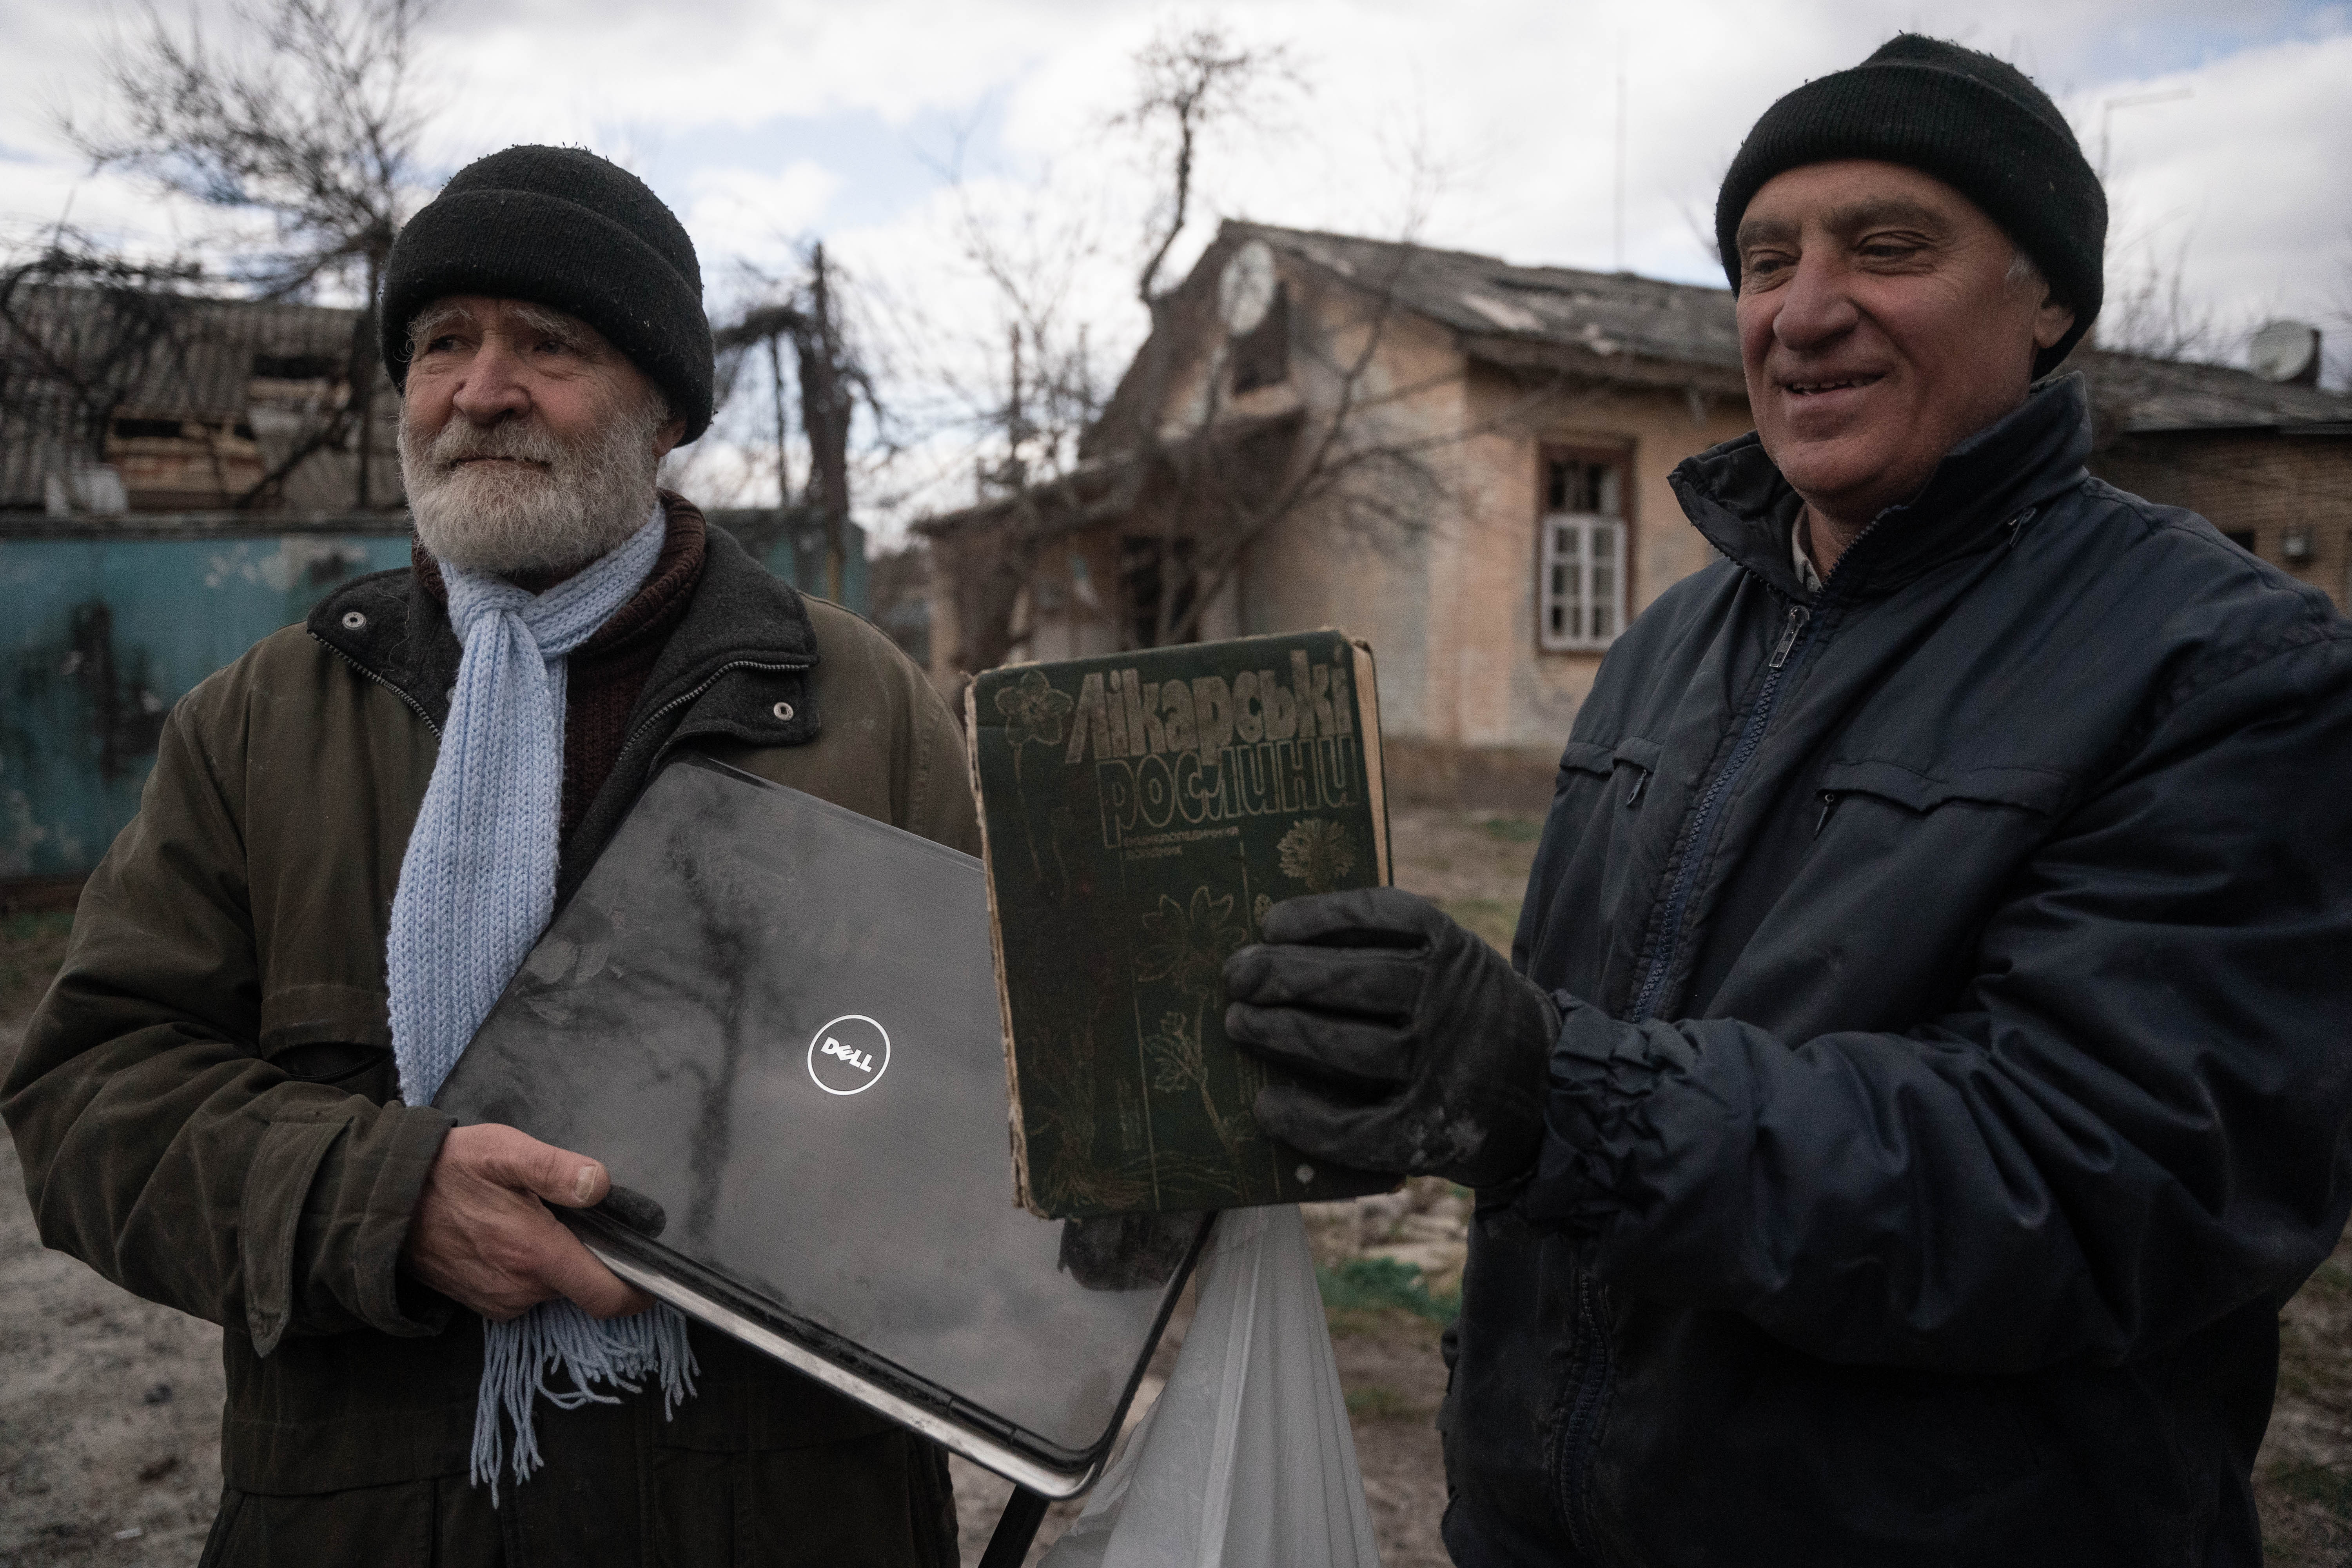 Valerii, de 84 años, regresó a su casa destruida para rescatar su computadora y un libro con recetario de hierbas medicinales. "Es el mejor libro de Ucrania", dice.